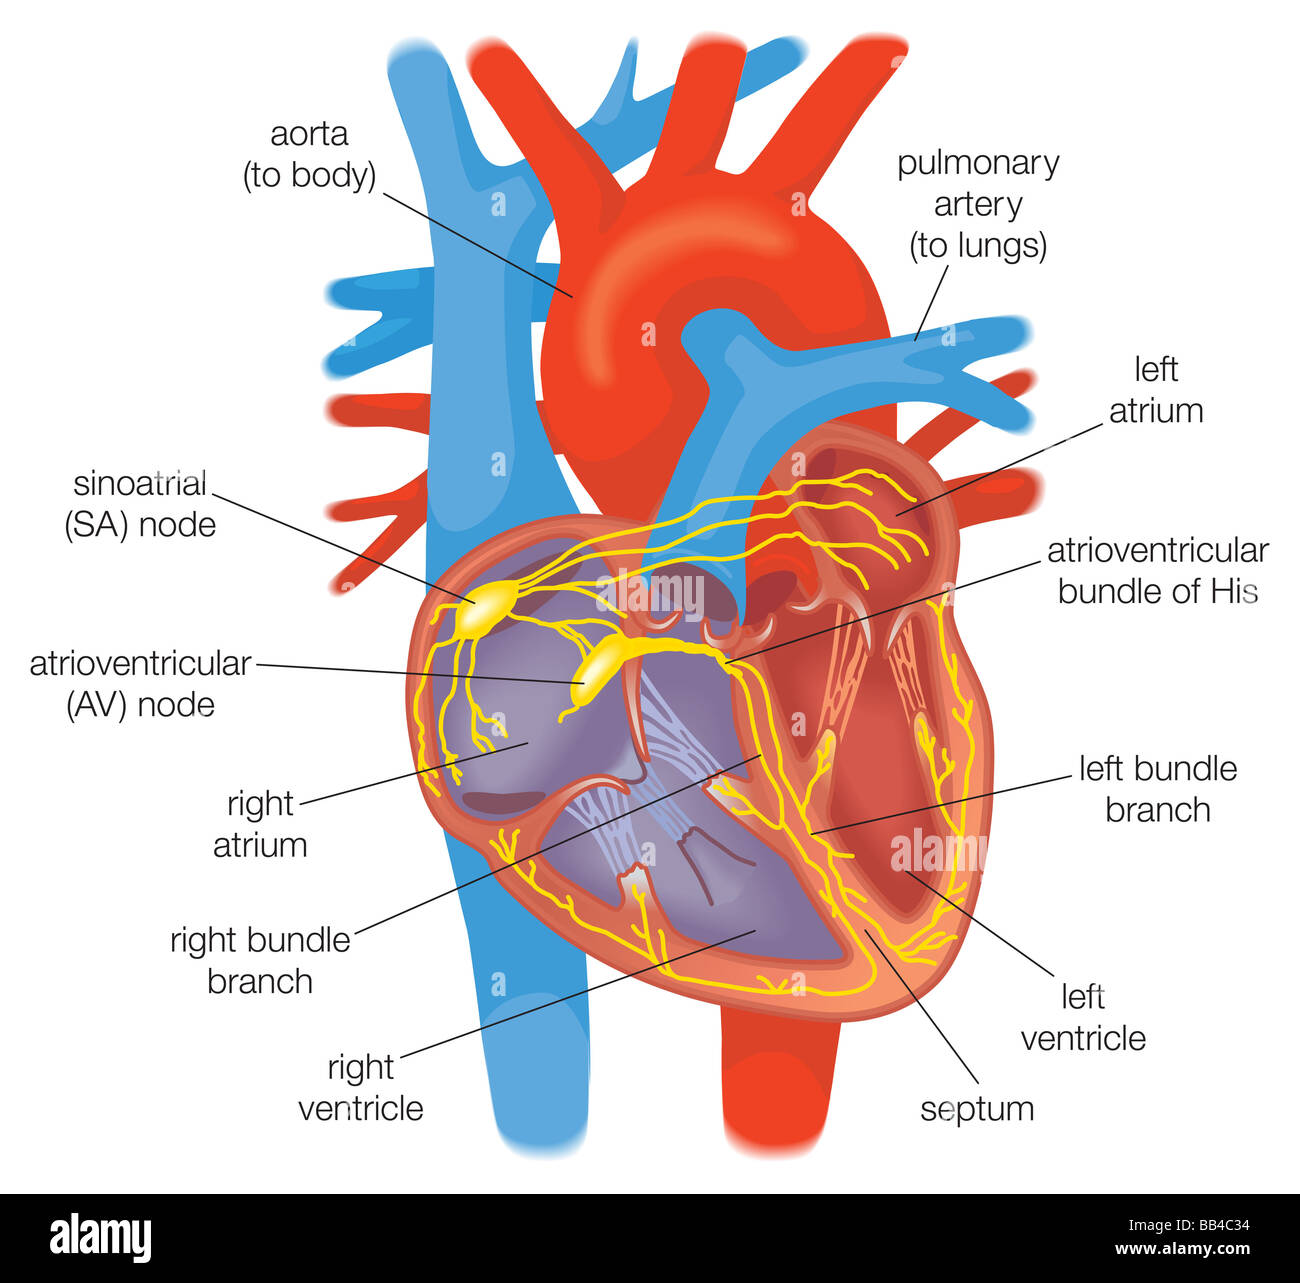 La conduzione elettrica nel cuore in individui sani è controllata dal pacemaker cellule nel nodo senoatriale. Foto Stock